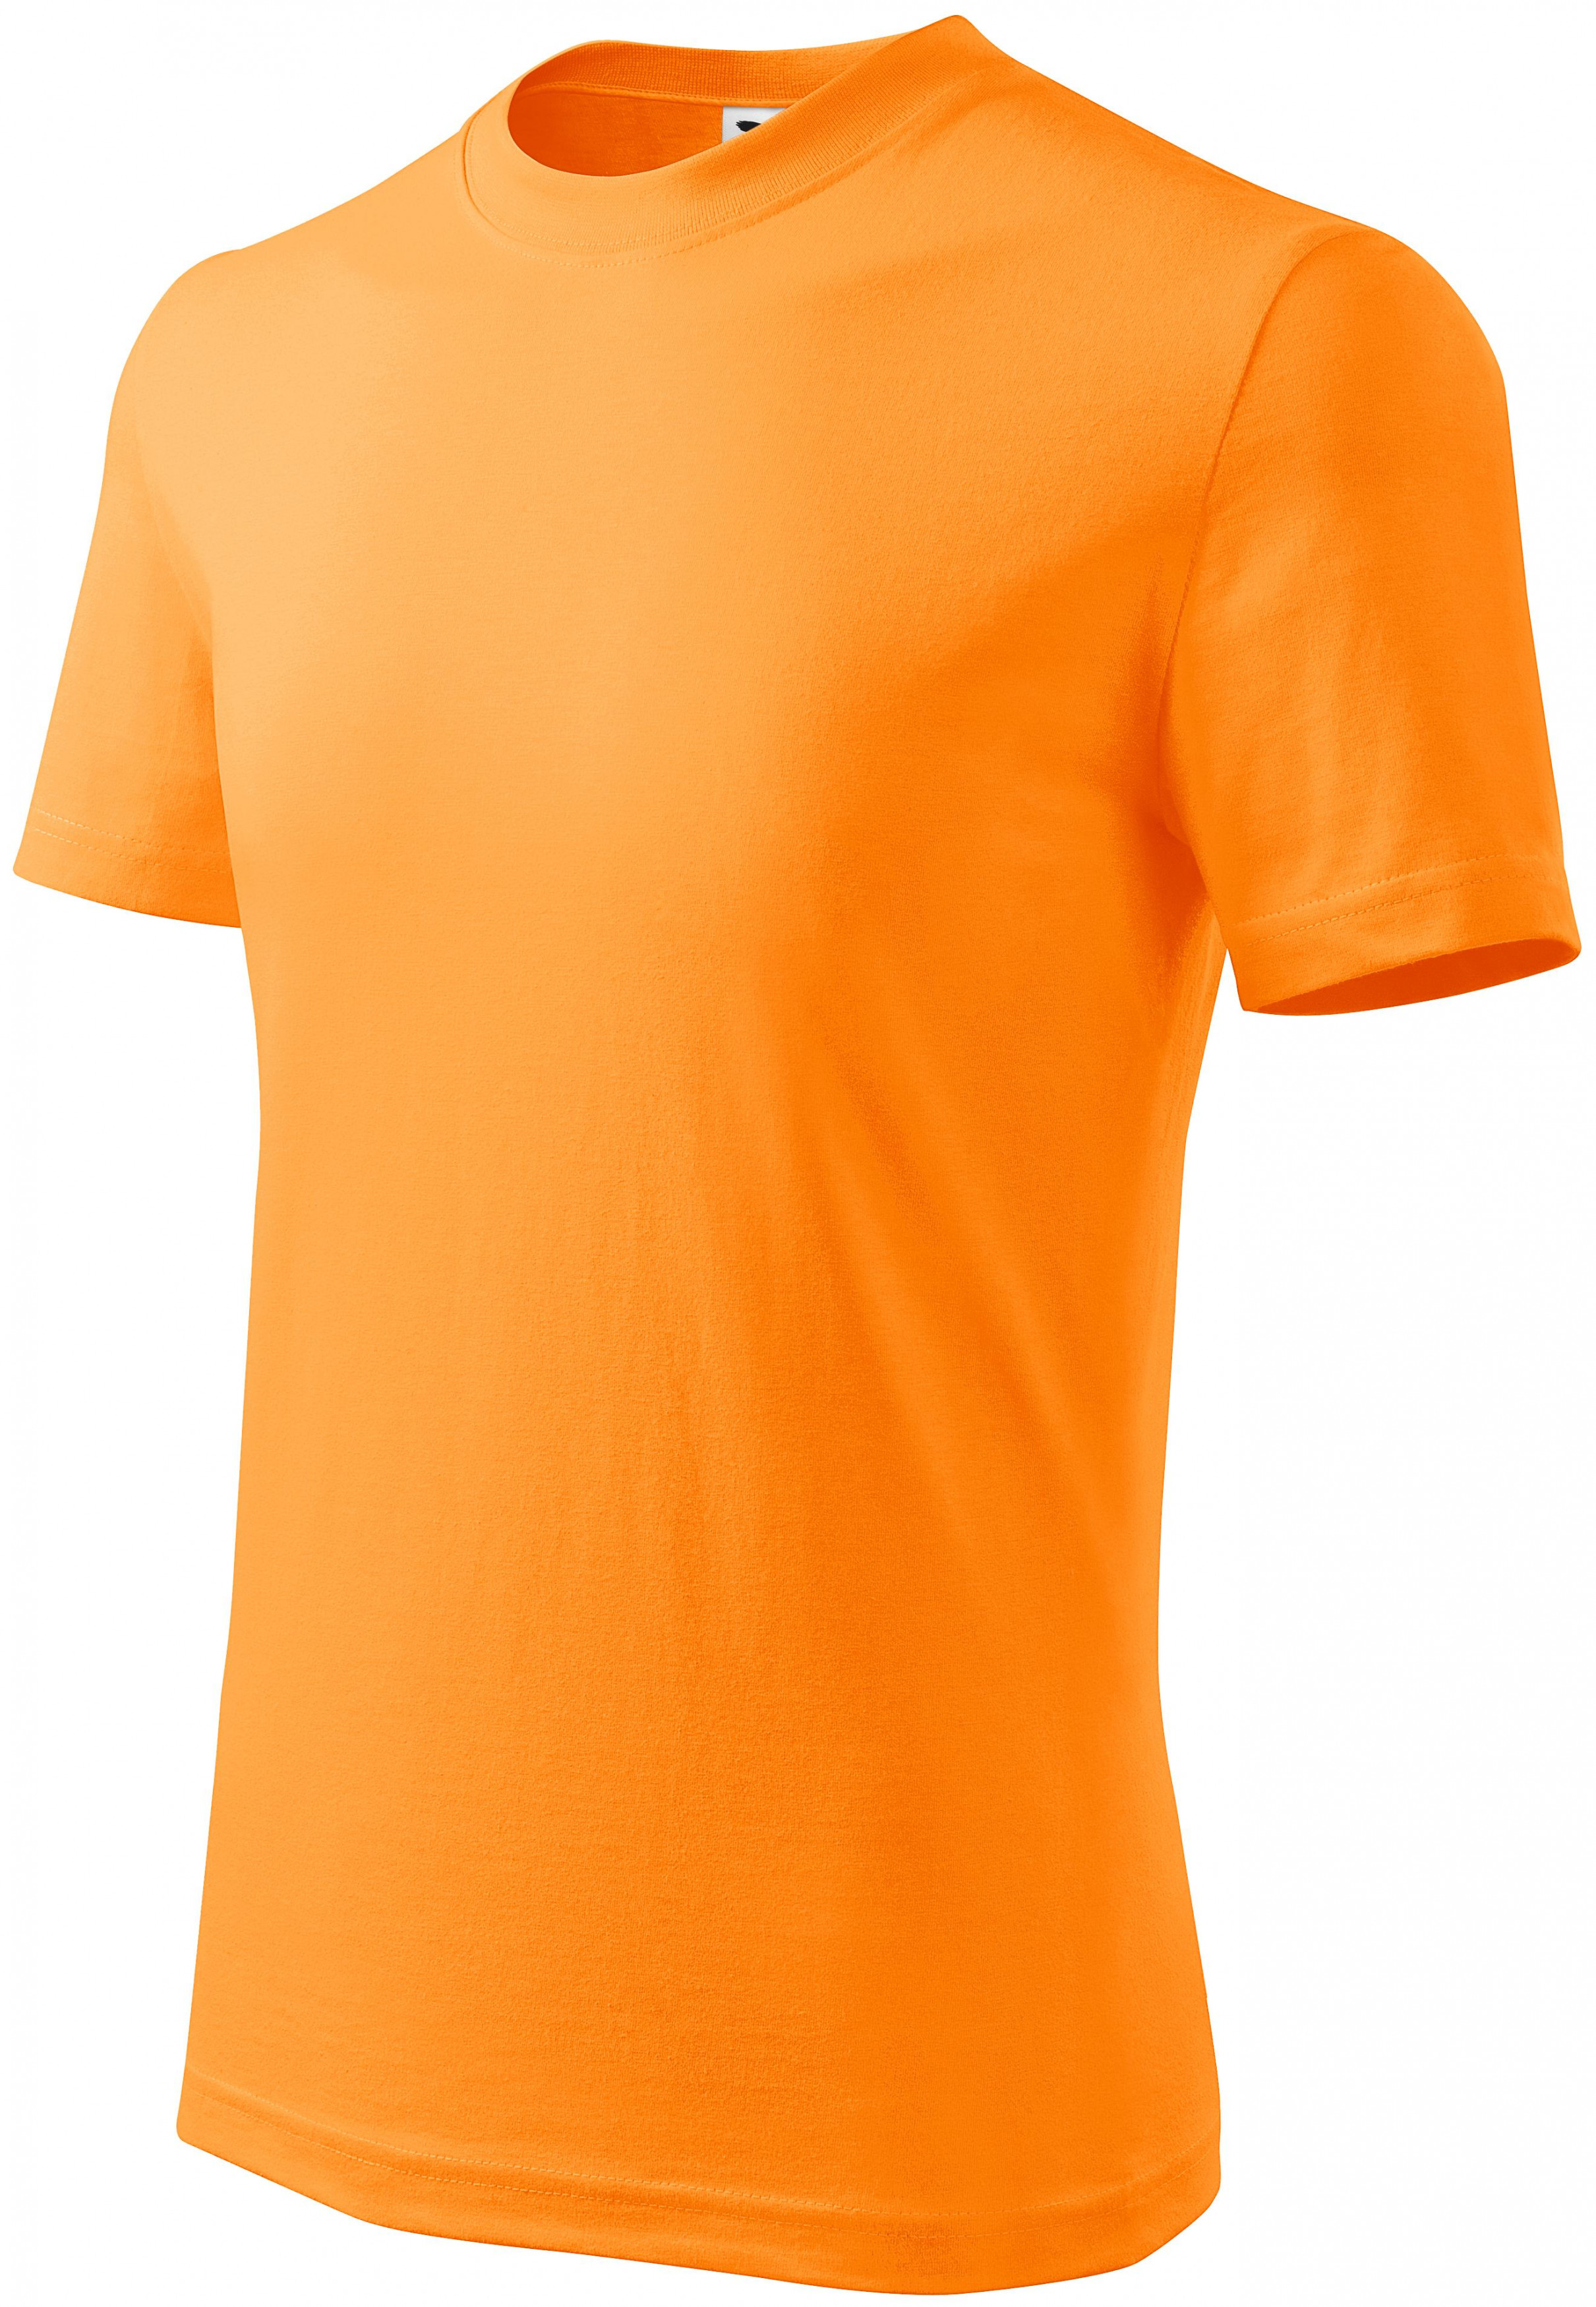 Detské tričko jednoduché, mandarínková oranžová, 110cm / 4roky